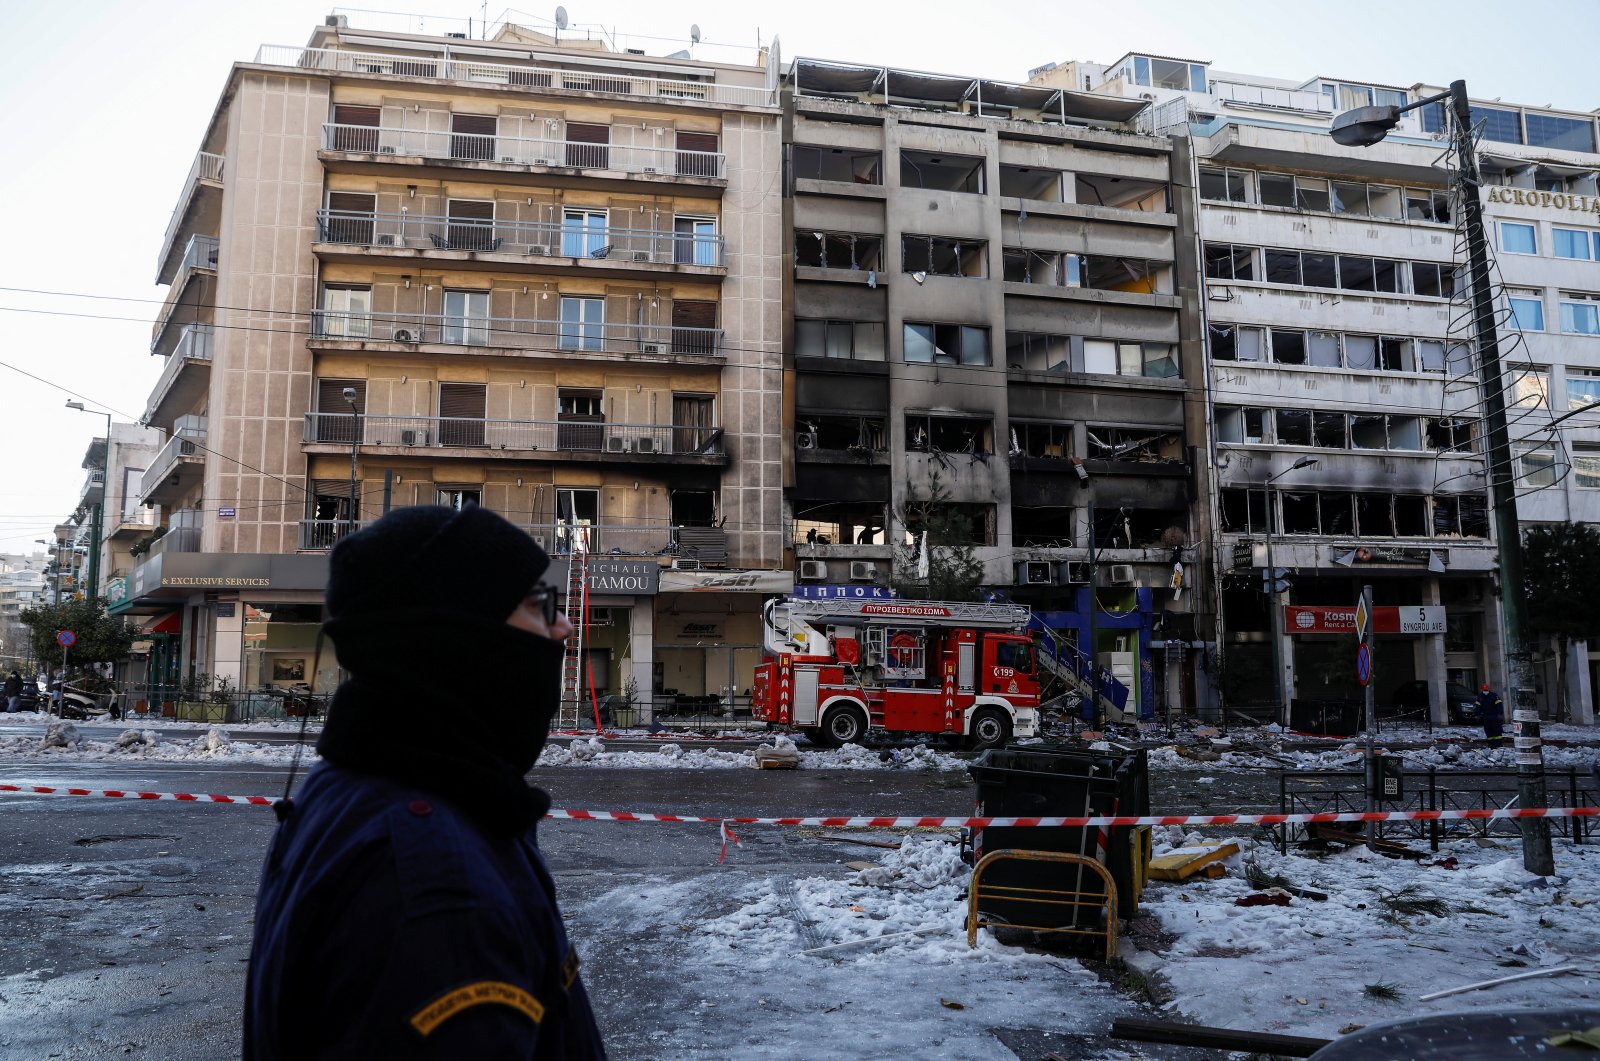 Ledakan gas yang diduga di pusat kota Athena melukai 3, menyebabkan kerusakan